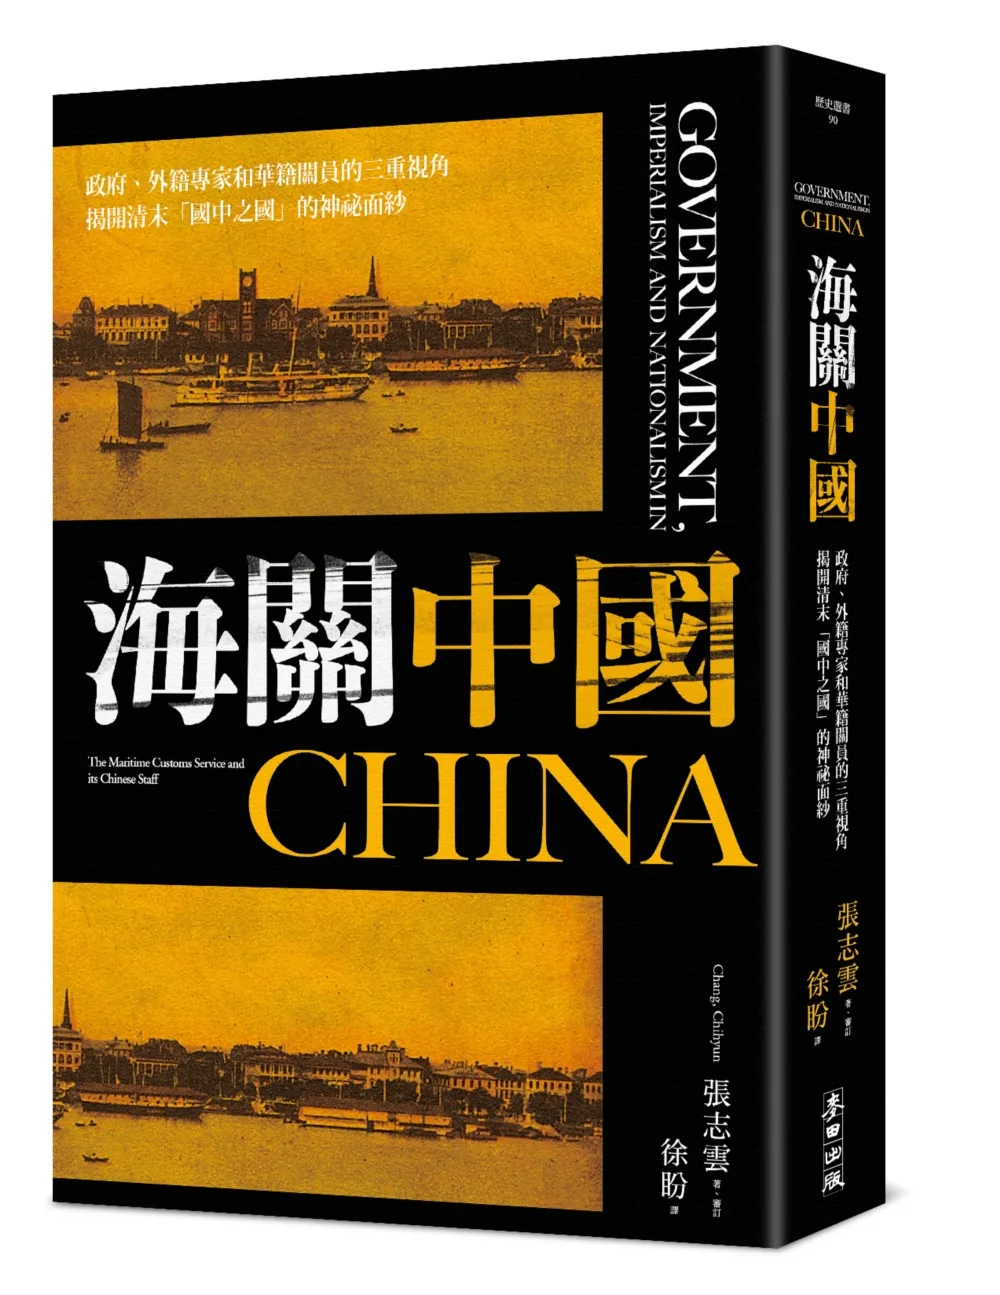 海關中國：政府、外籍專家和華籍關員的三重視角，揭開清末「國中之國」的神祕面紗